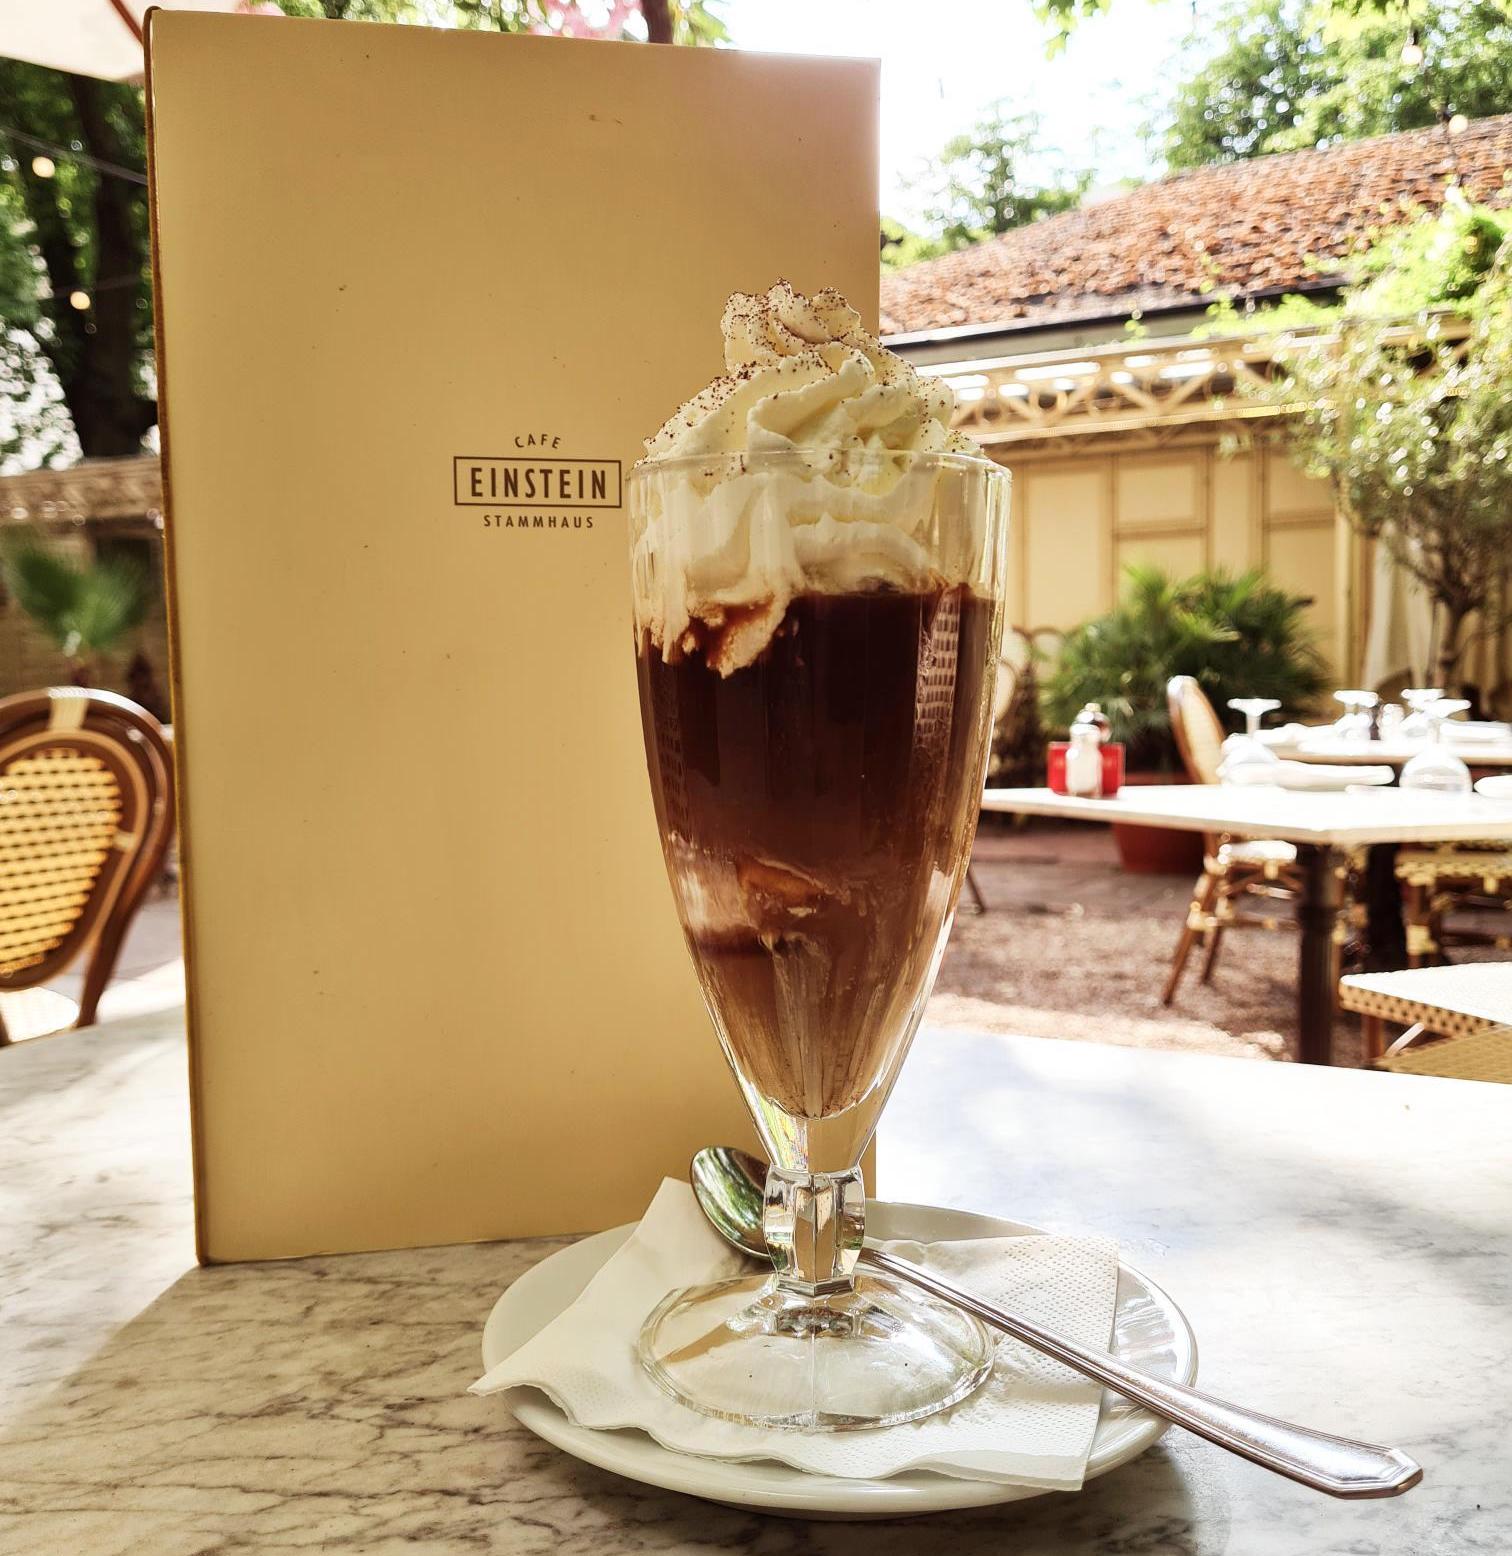 Eiskaffee An der Kurfürstenstraße bestellen wir am liebsten einen Wiener Eiskaffee mit hausgemachtem Vanilleeis – aber bitte mit Sahne!